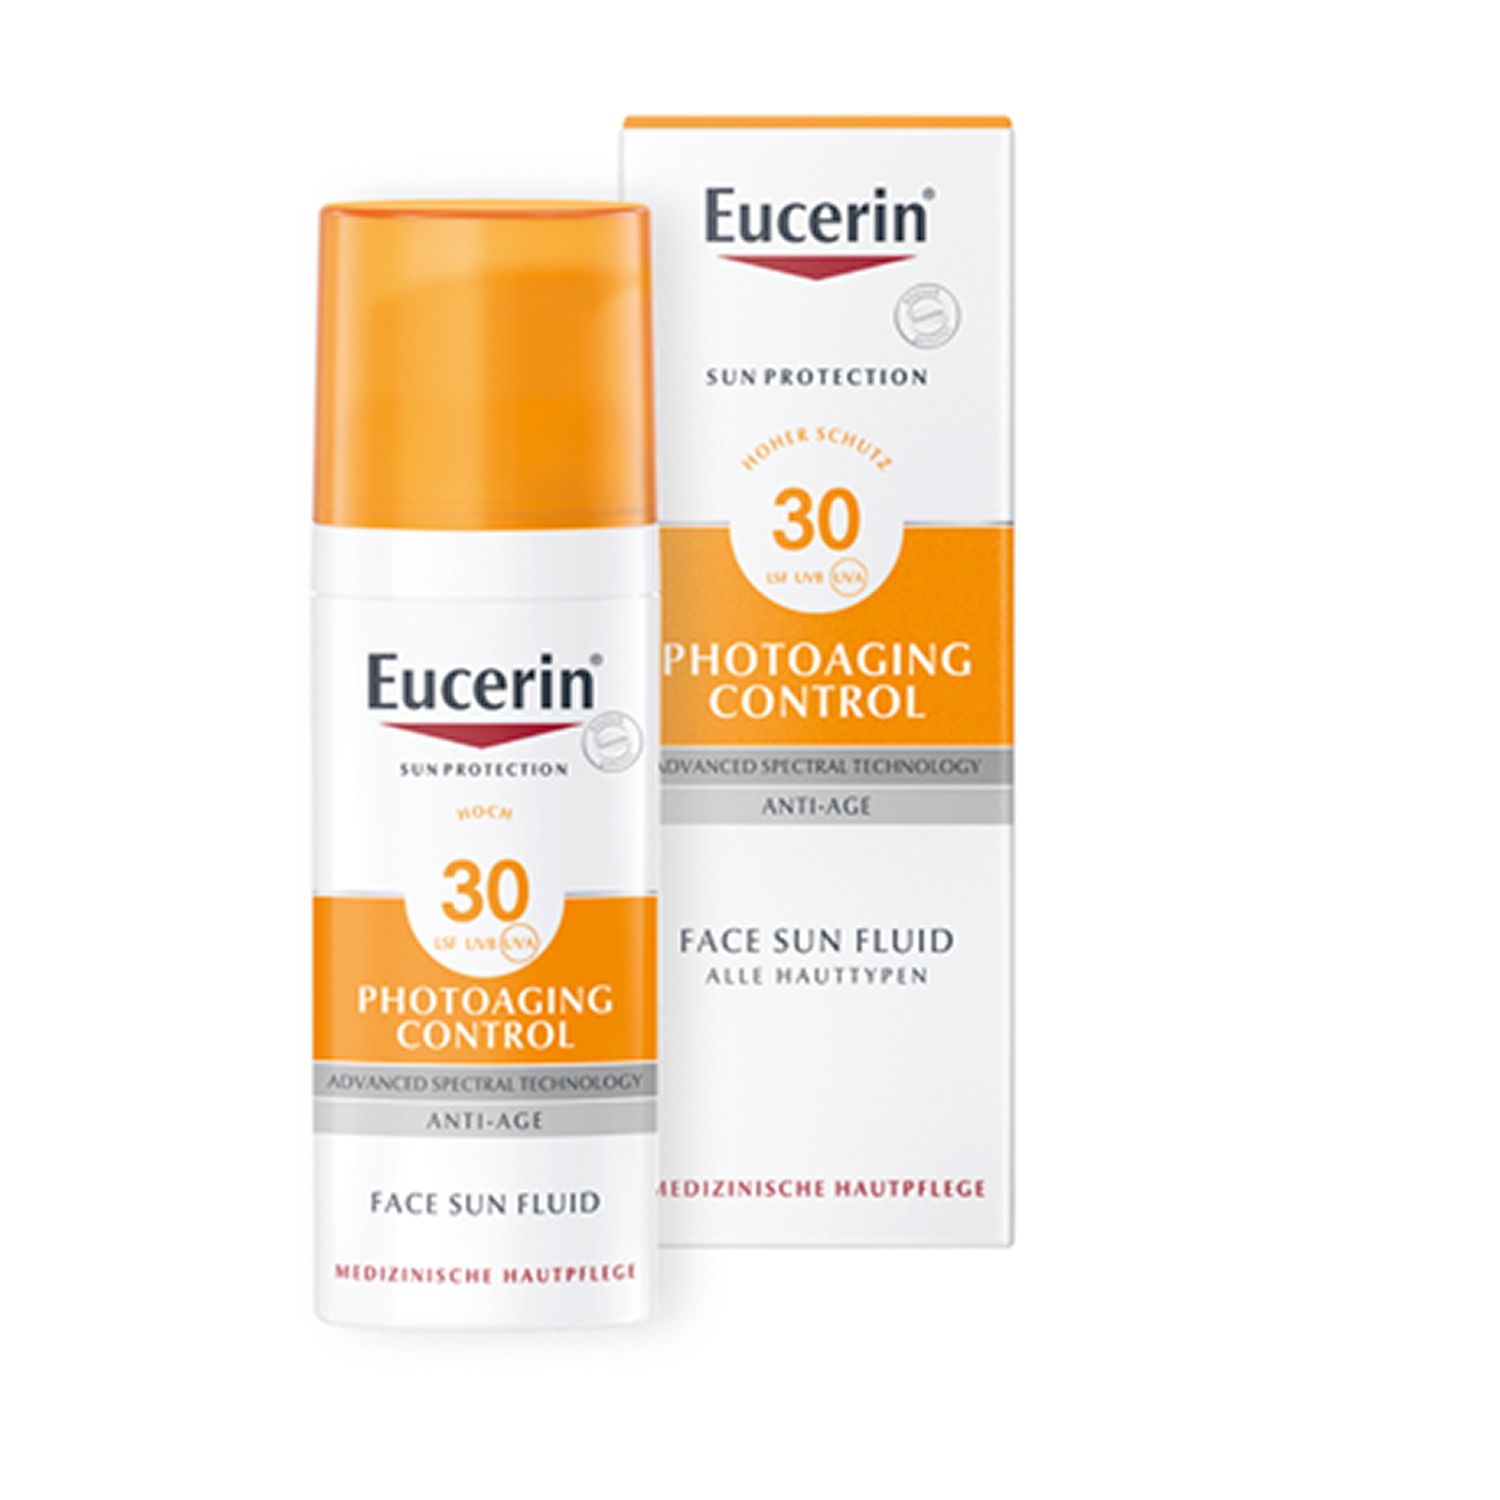 Eucerin® Photoaging Control Face Sun Fluid LSF 30 – hoher Sonnenschutz hilft gegen Photoaging und reduziert Falten sichtbar